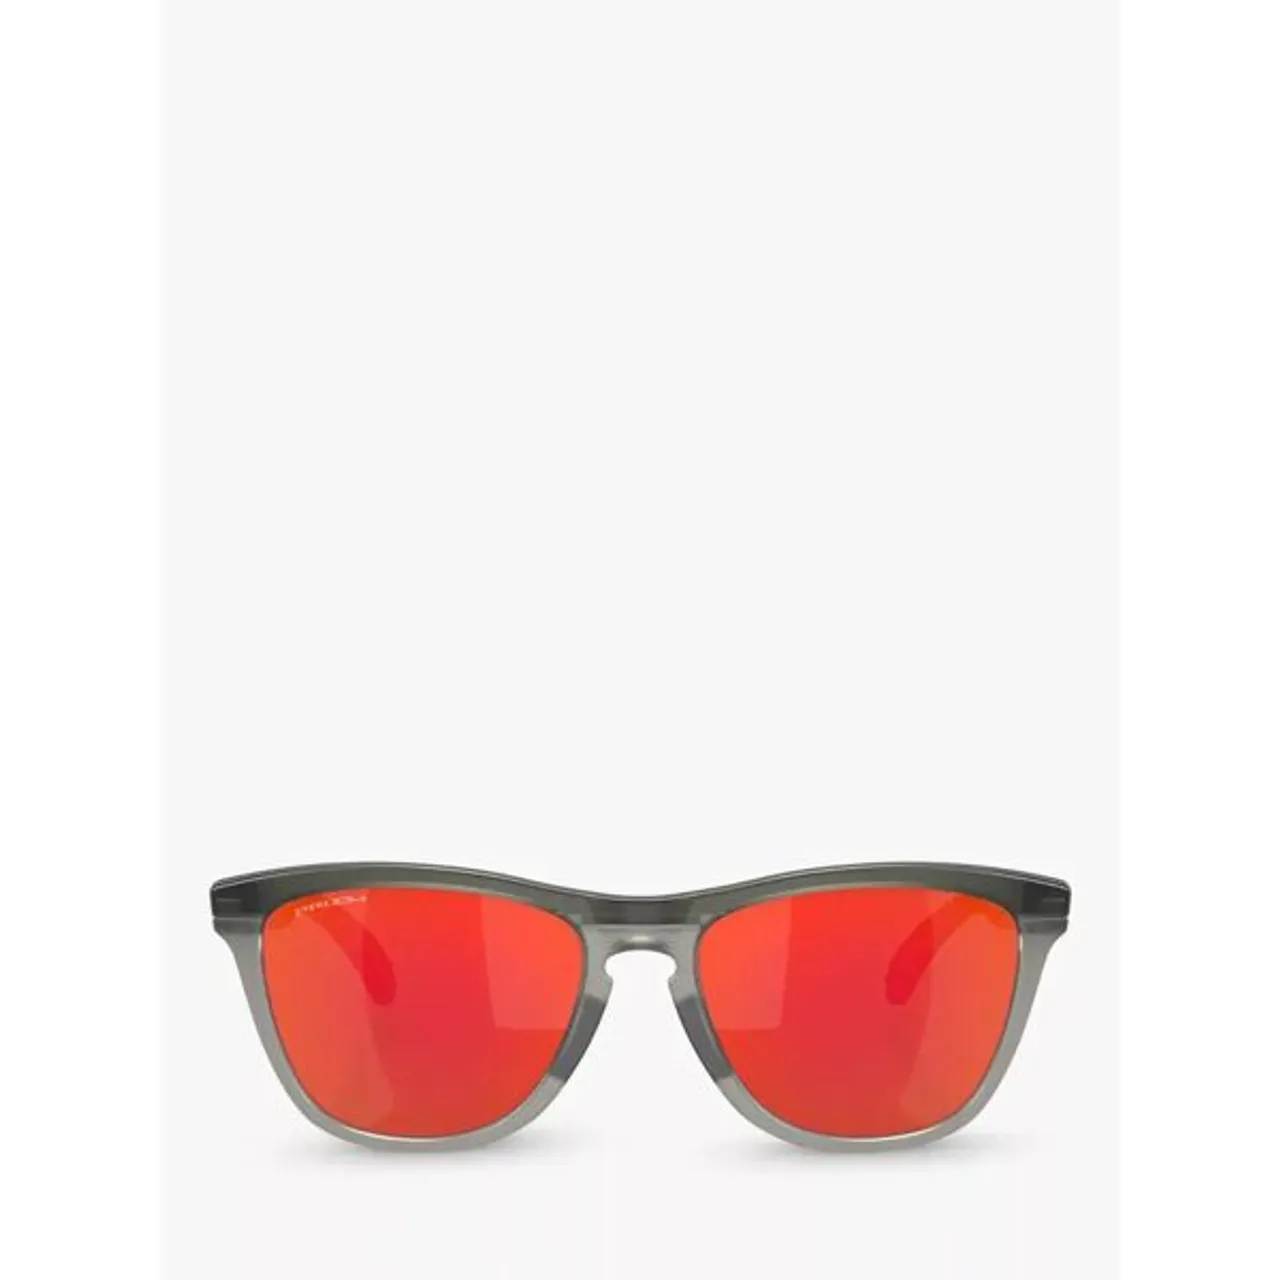 Oakley OO928 Men's Frogskins D-Frame Sunglasses, Matte Grey Smoke/Mirror Orange - Matte Grey Smoke/Mirror Orange - Male